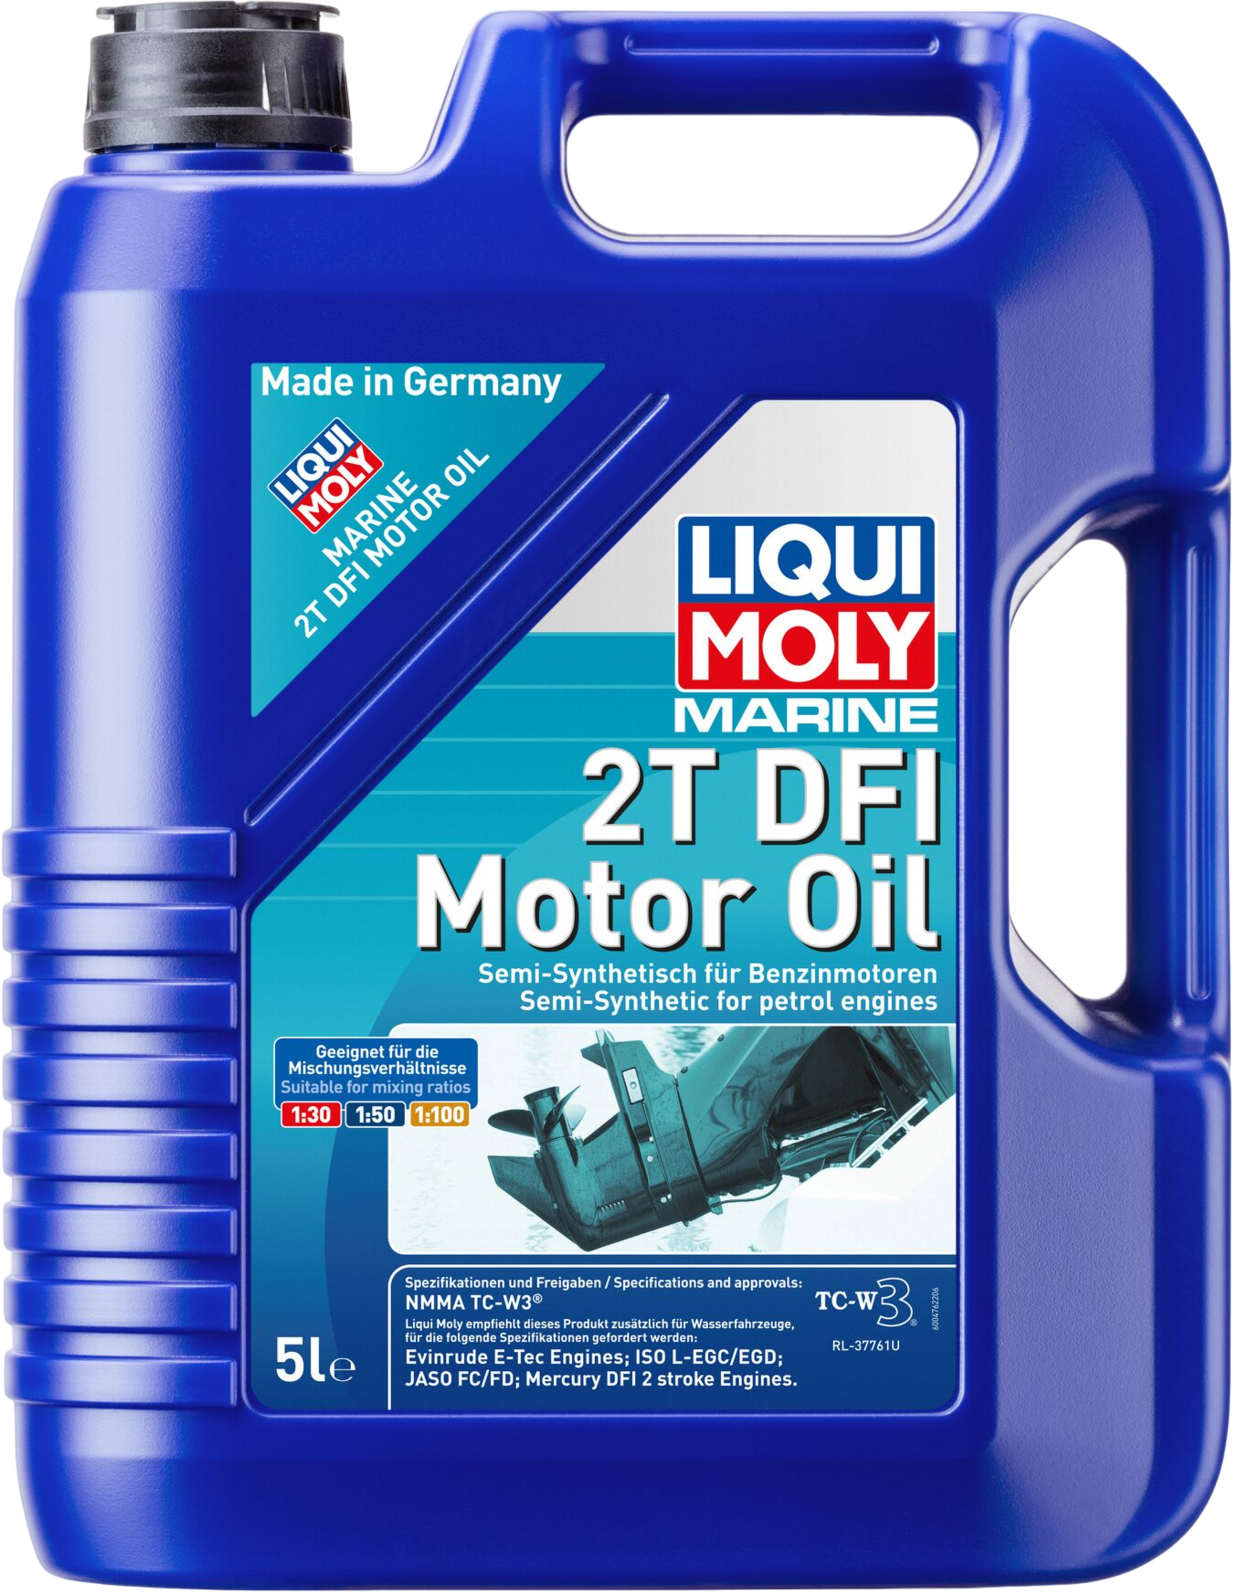 Liqui Moly Marine 2T DFI Motor Oil, 5 lt